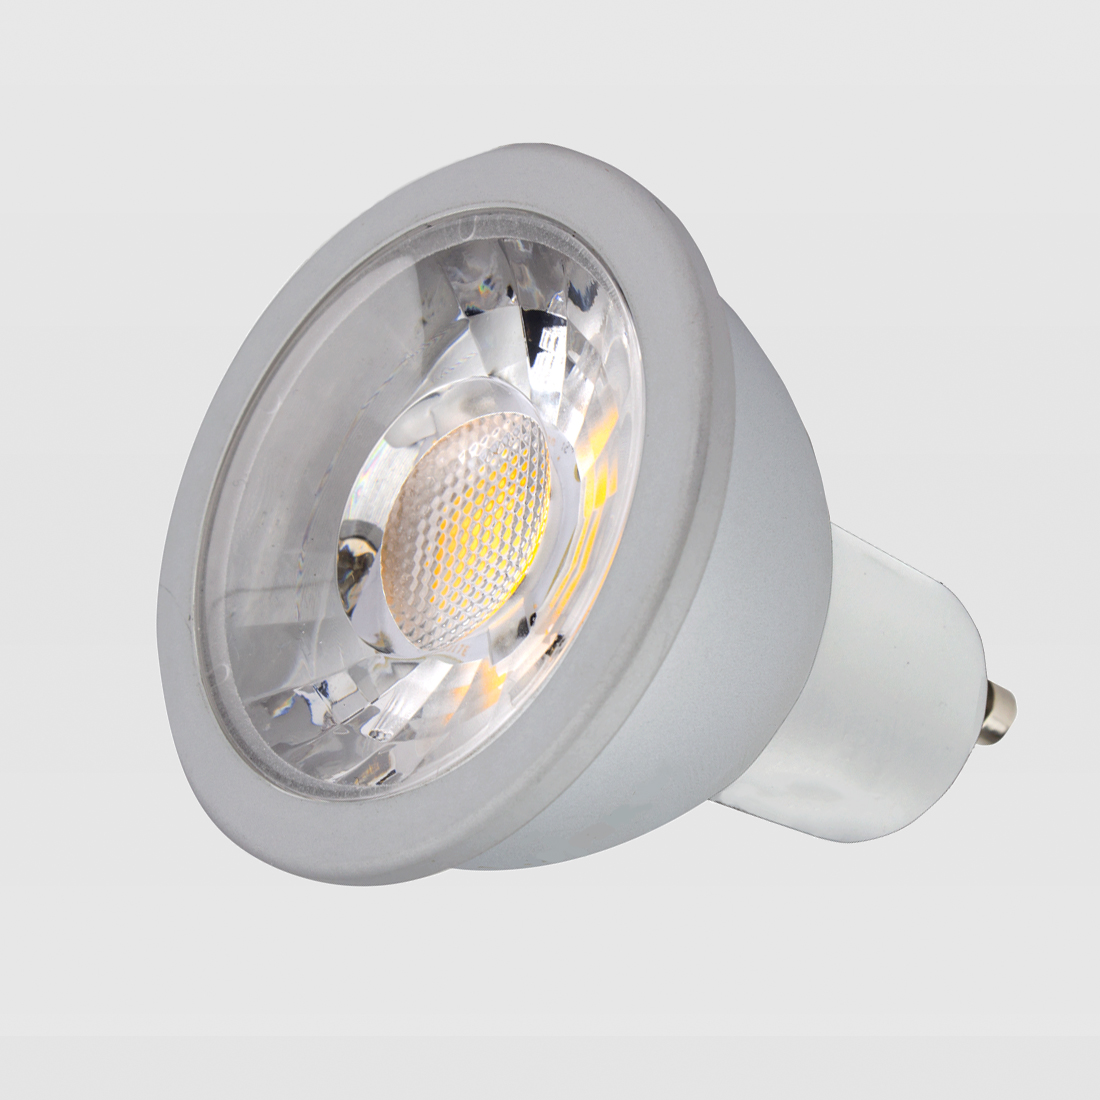 Lampe LED GU10 dimmable en Kelvin 6W 400 lm 2200 - 3000K